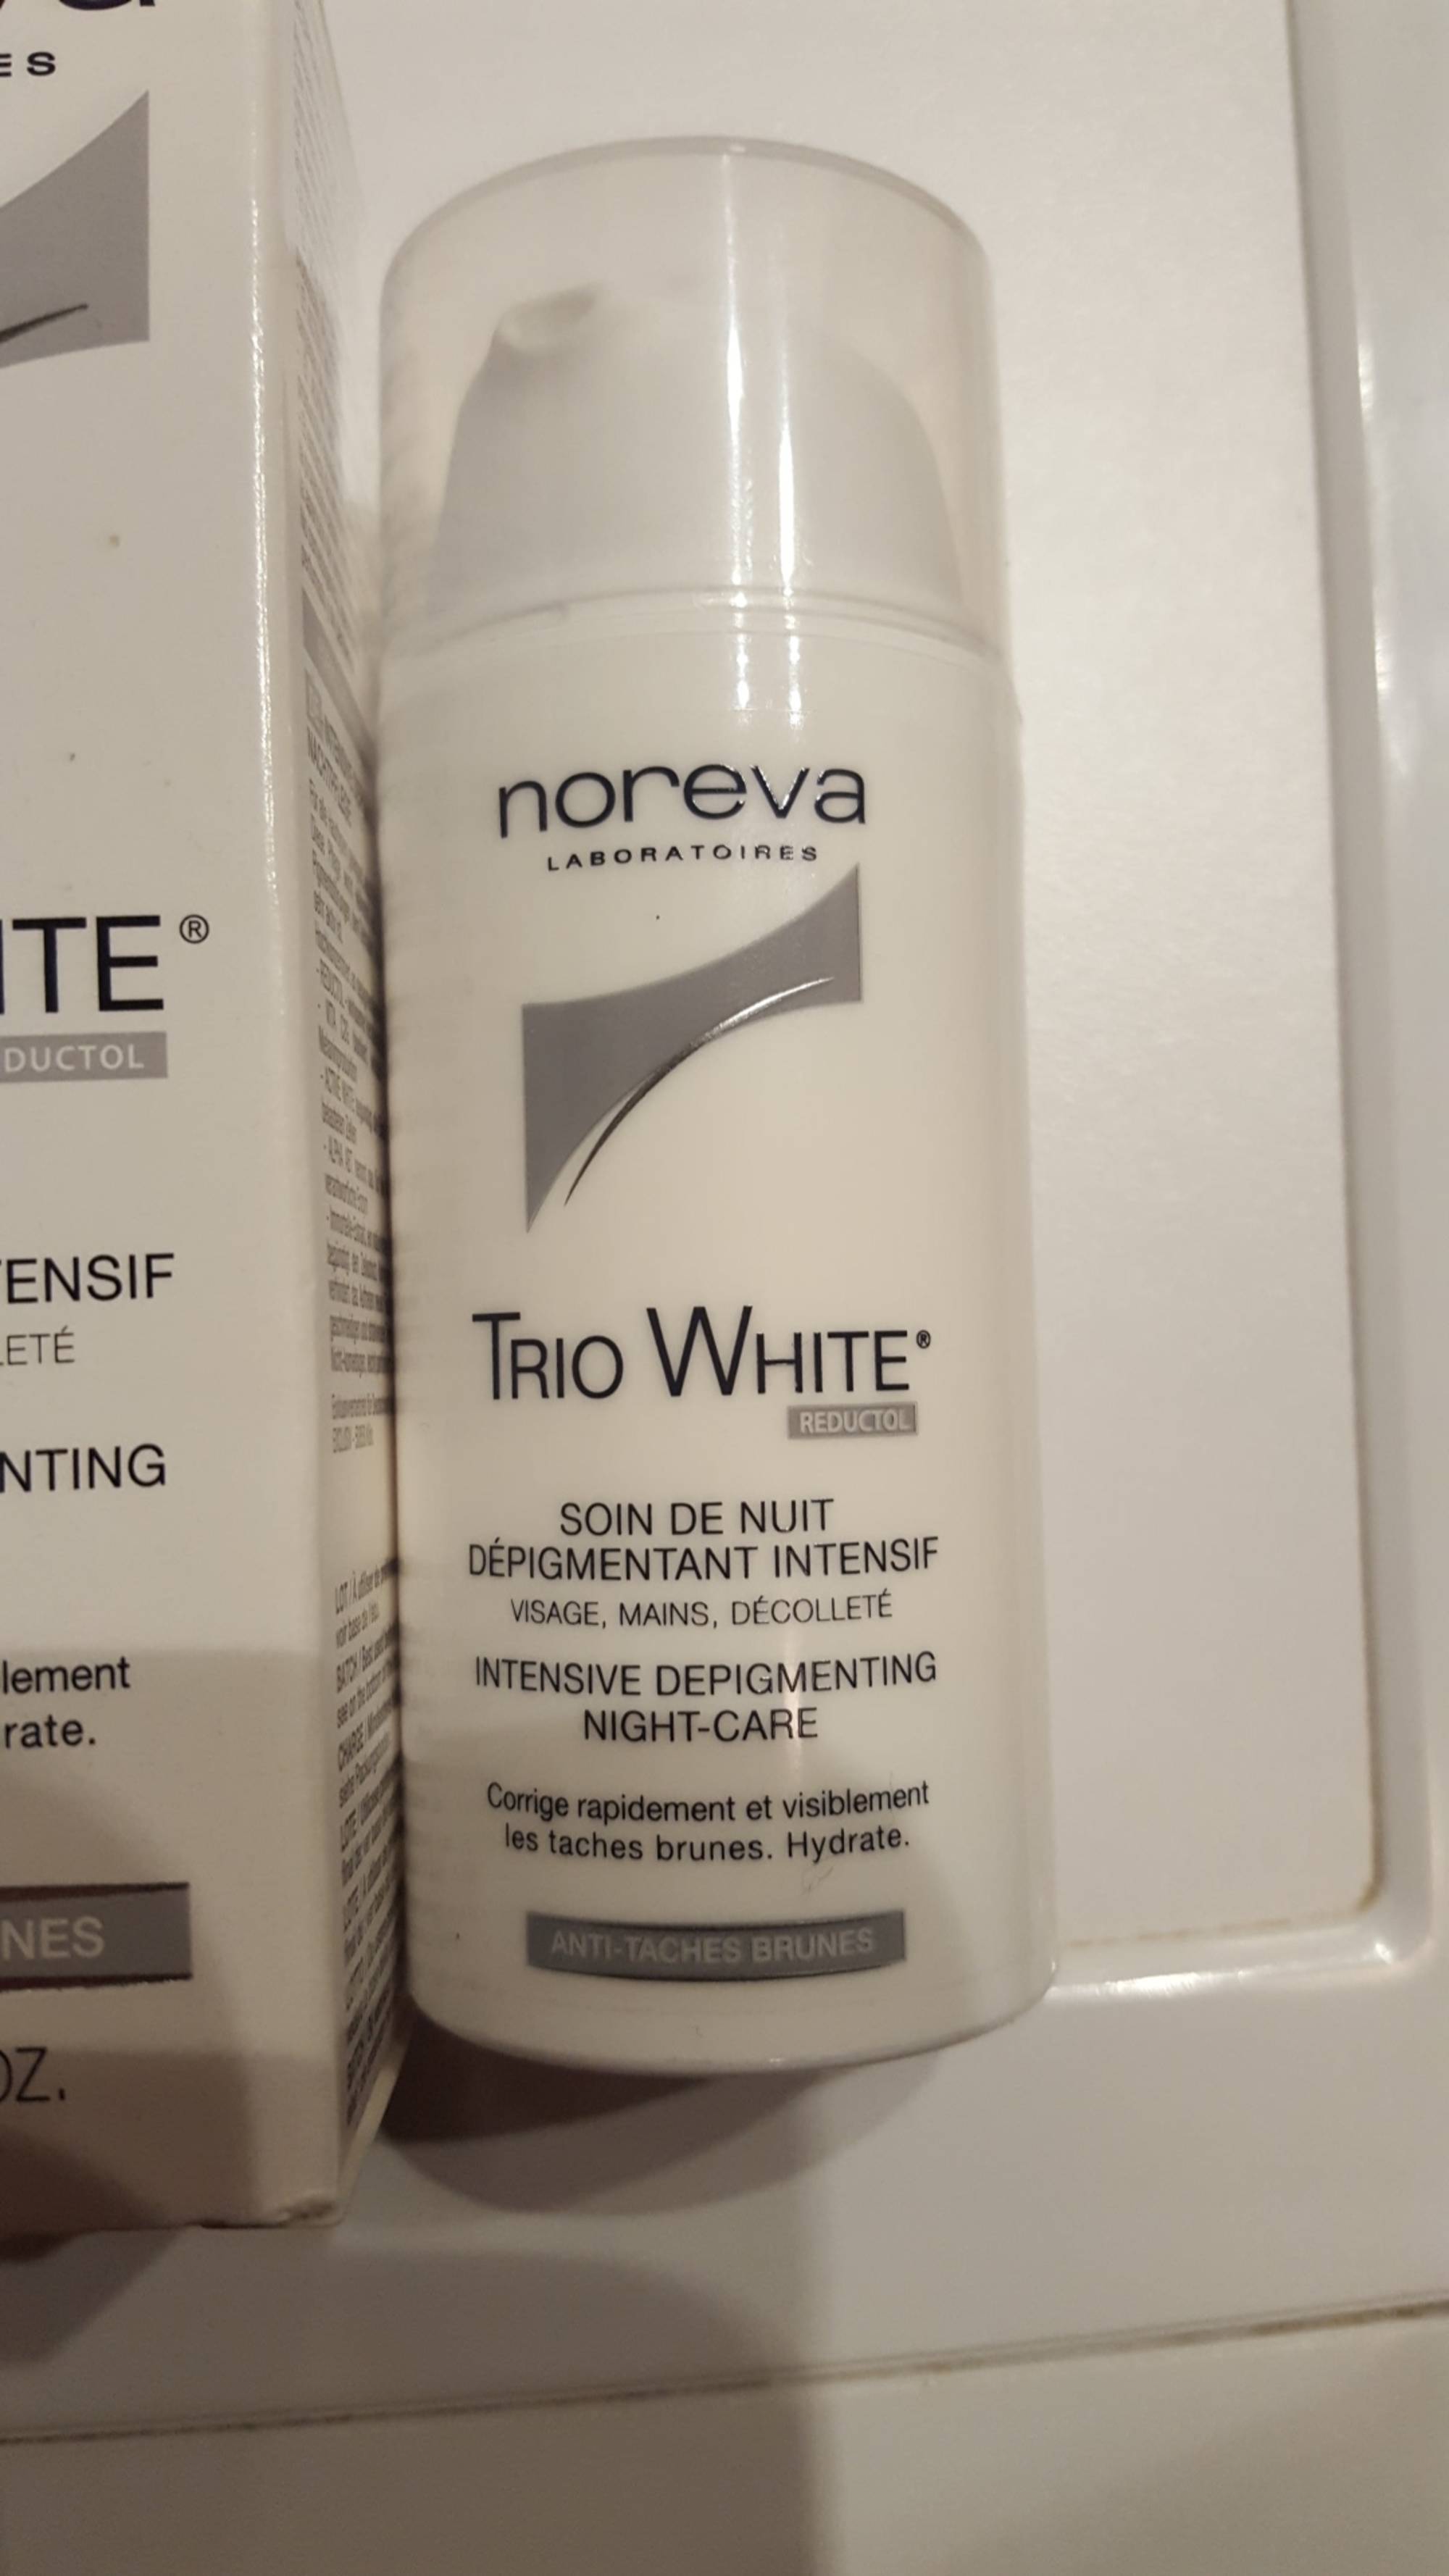 NOREVA - Trio white - Soin de nuit dépigmentant intensif